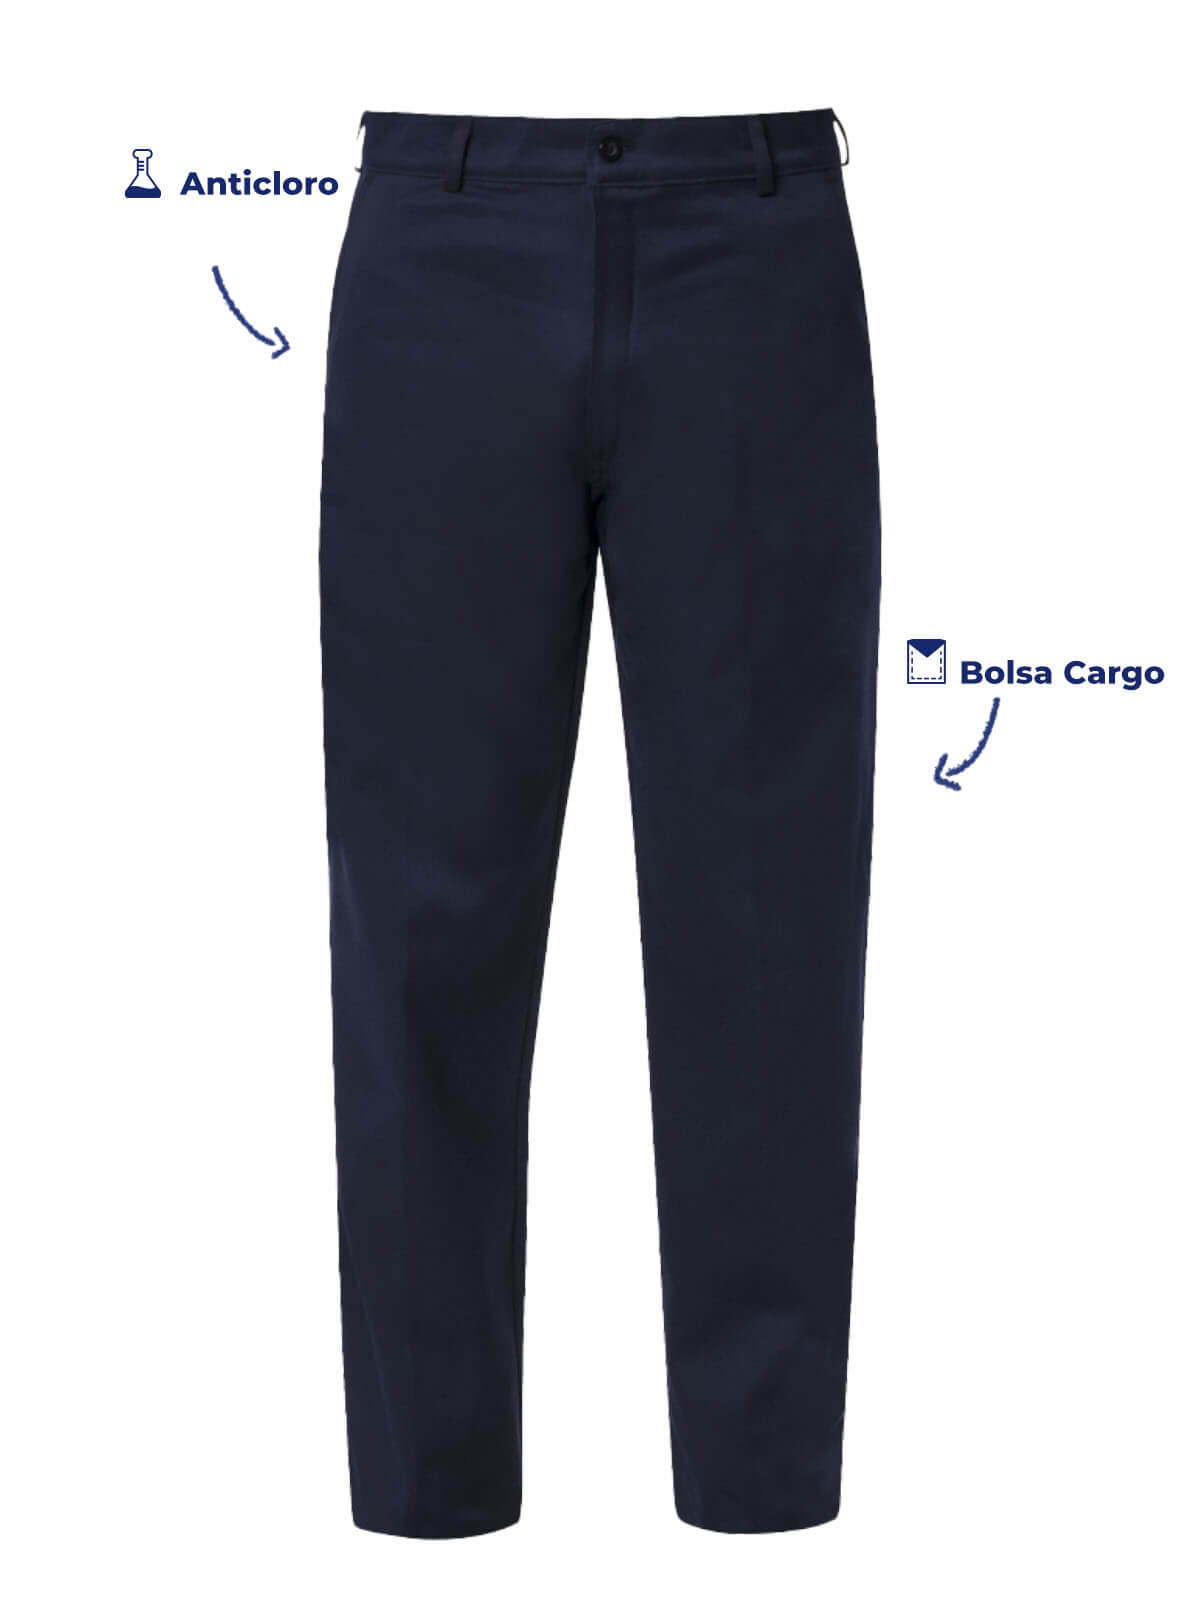 Pantalon tipo Cargo